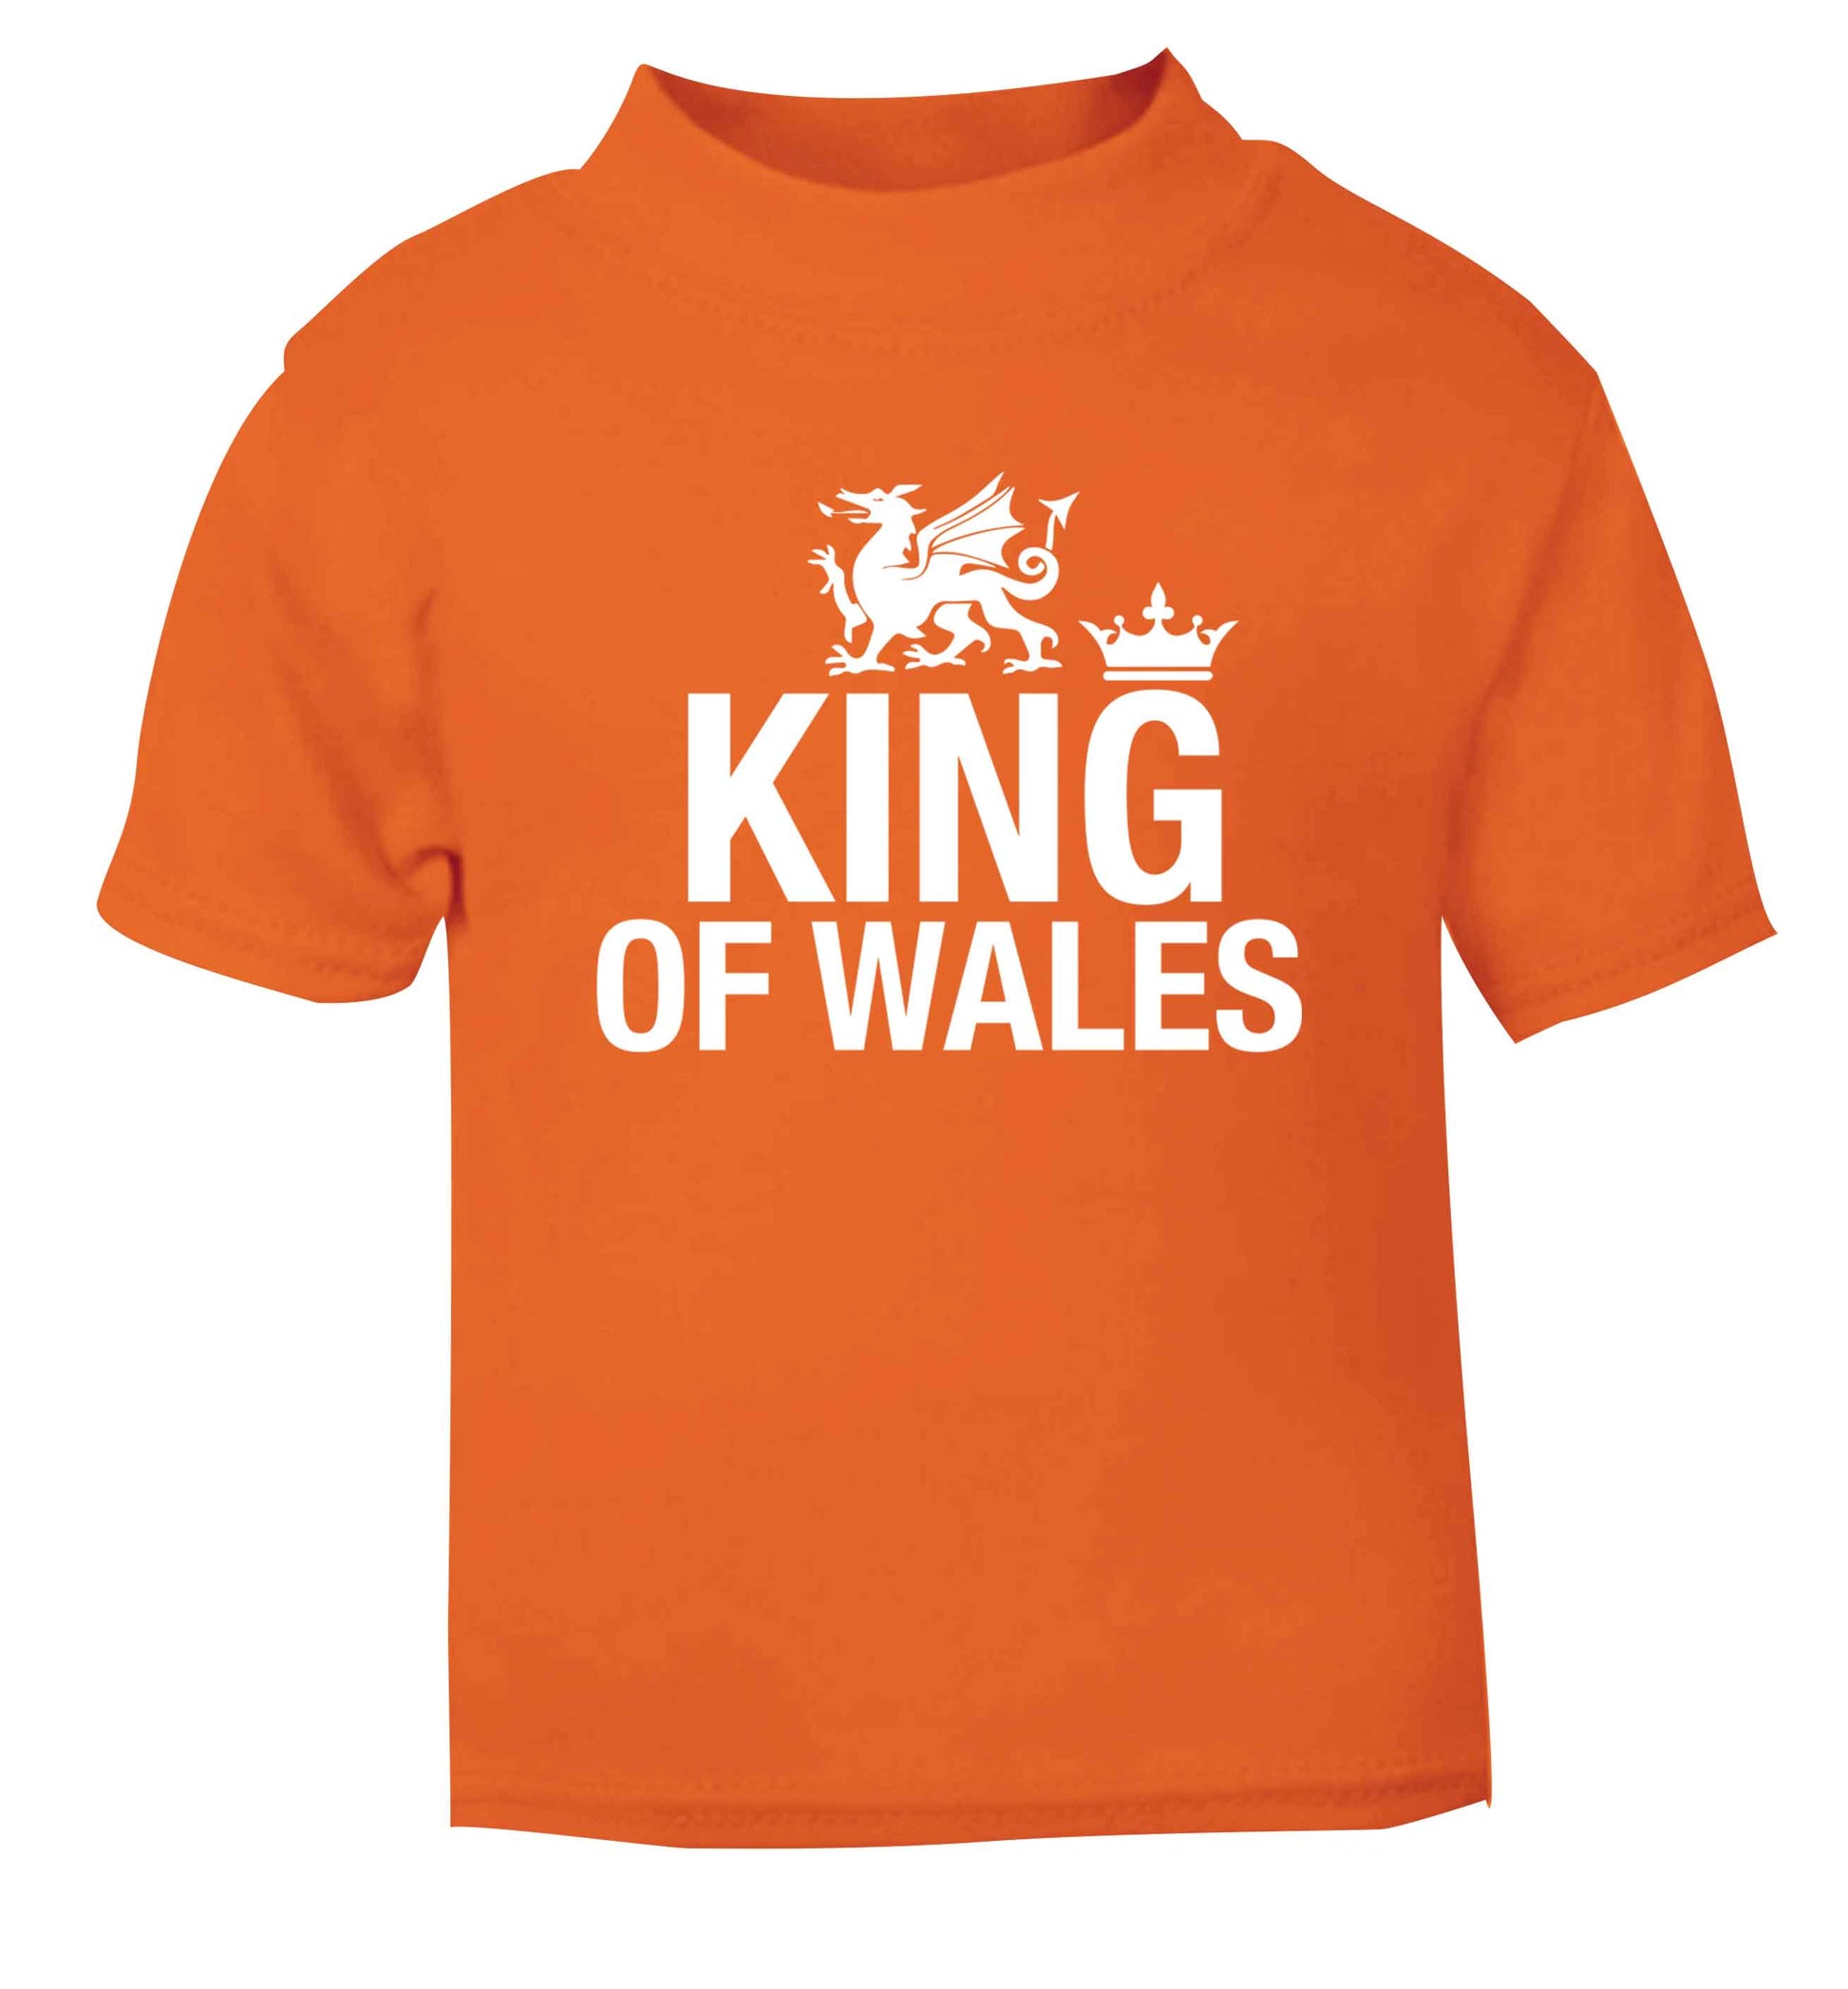 King of Wales orange Baby Toddler Tshirt 2 Years